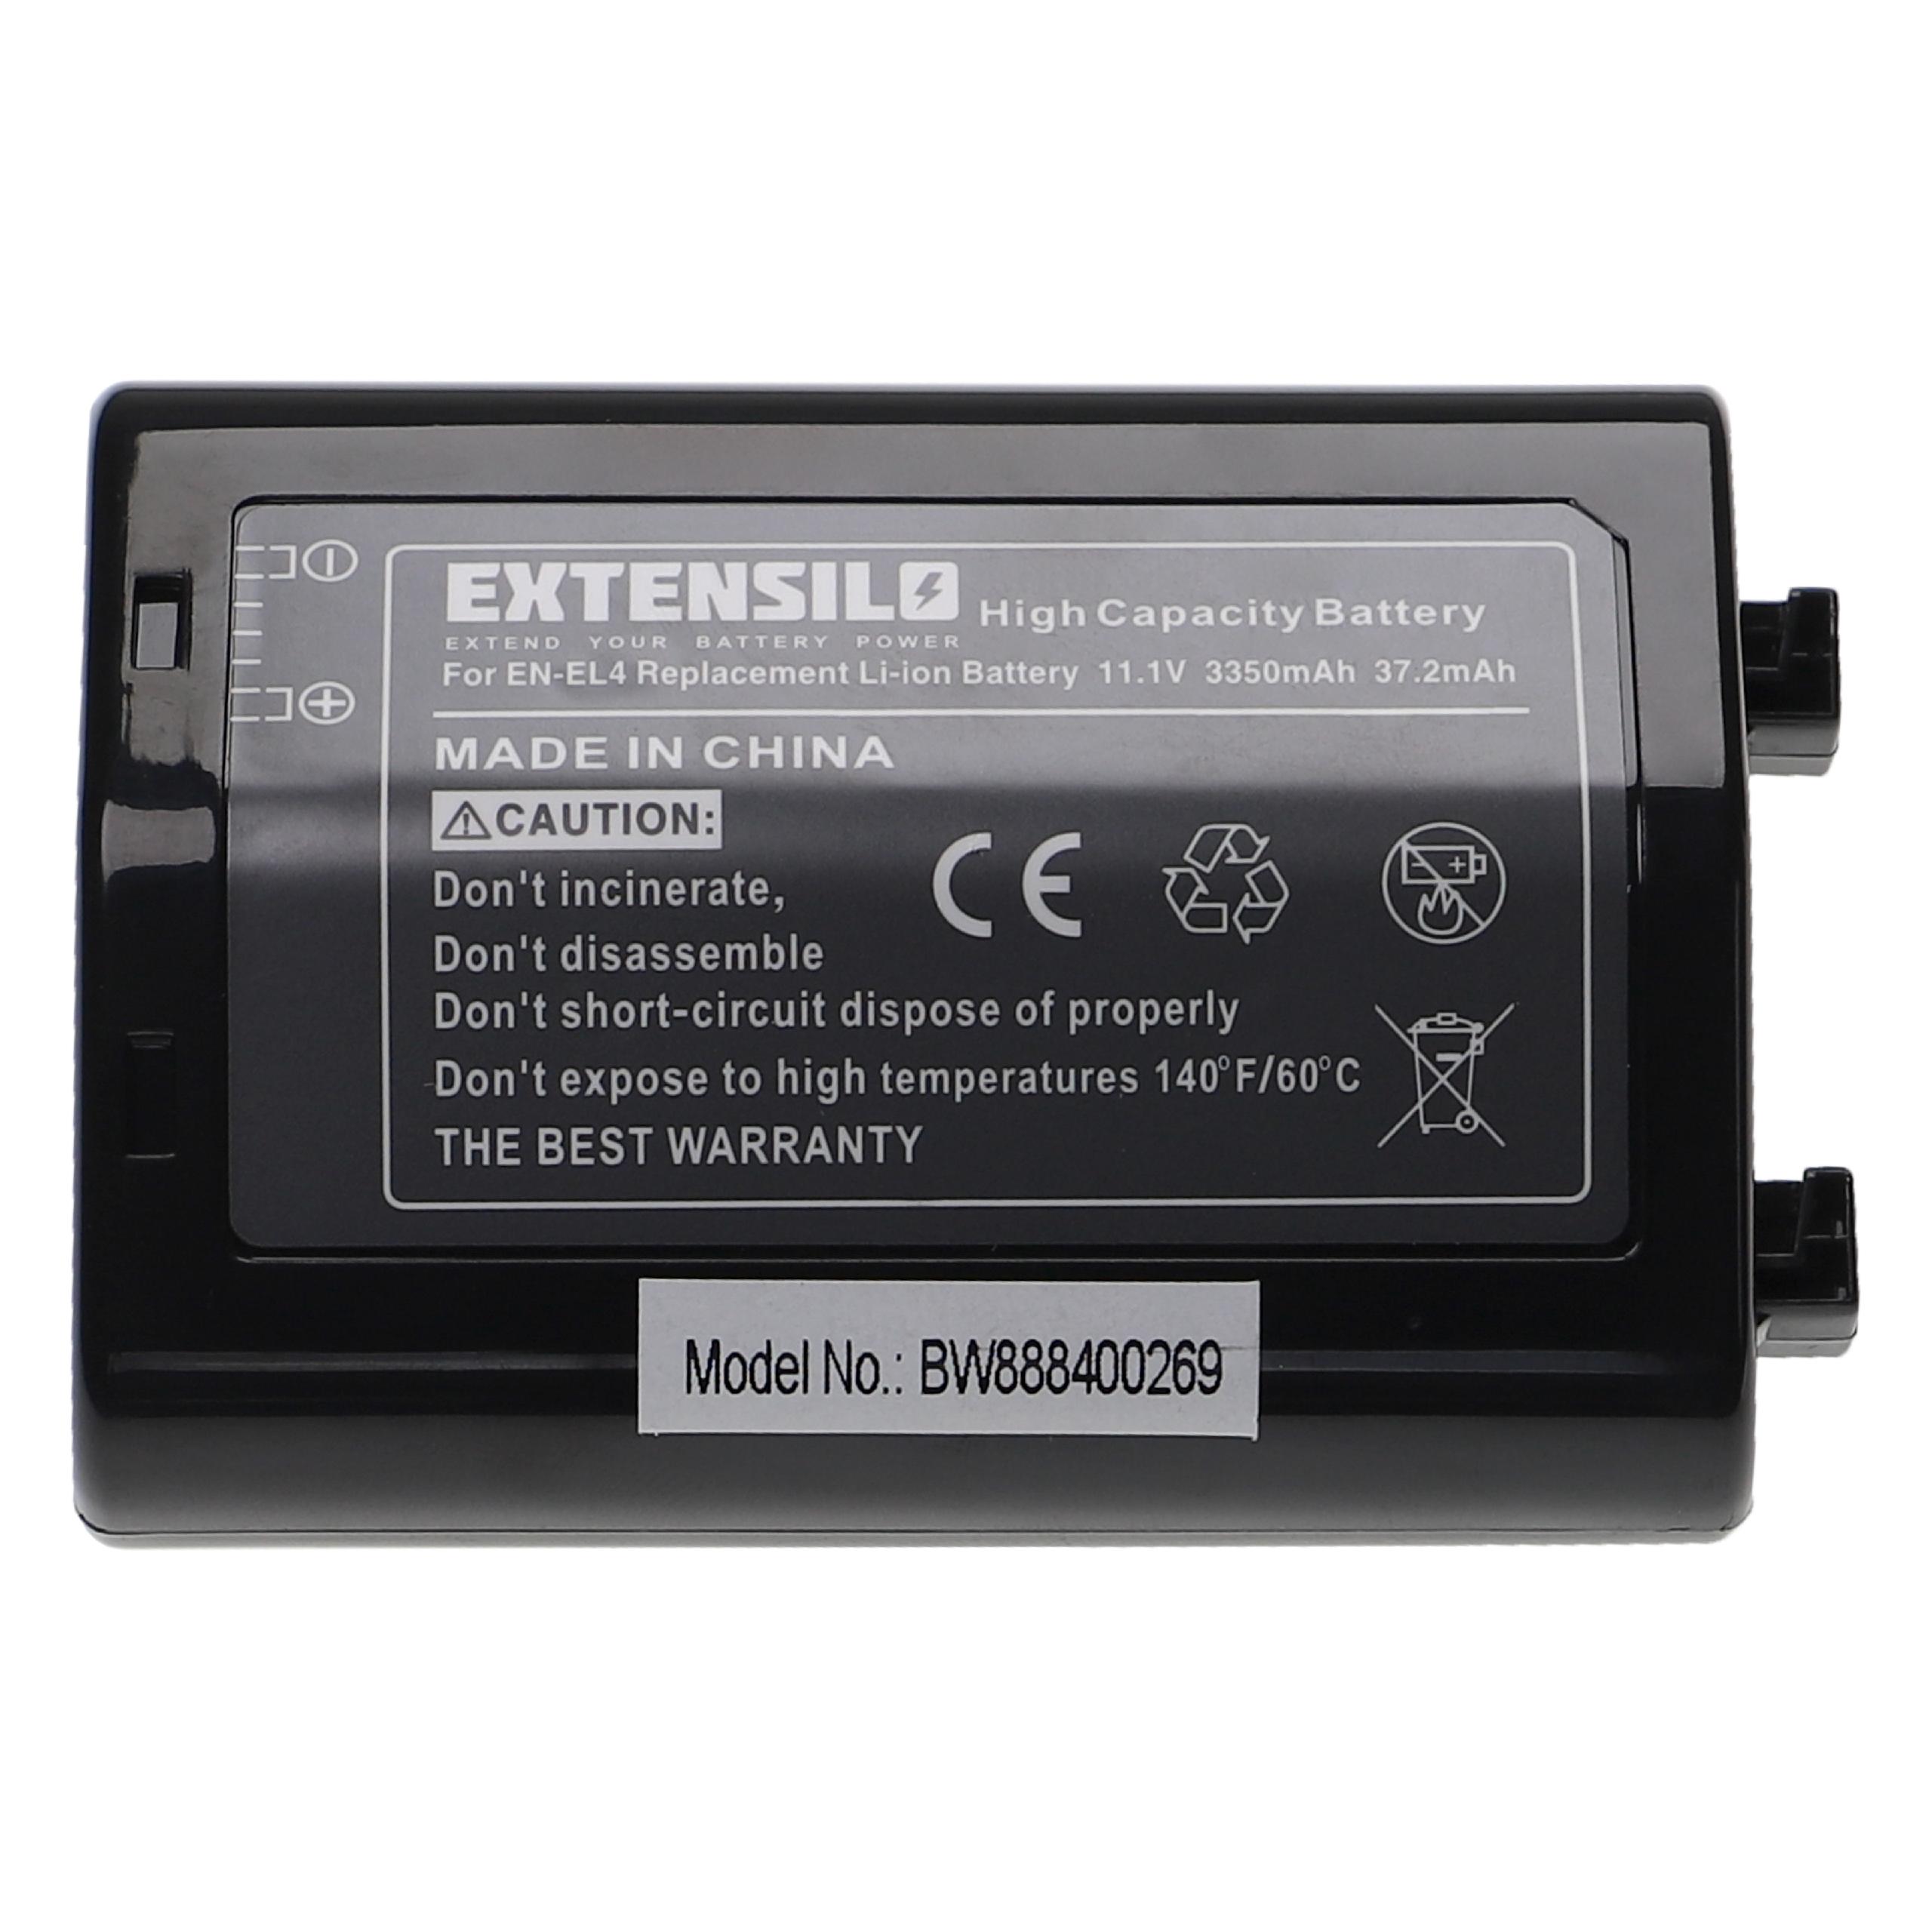 Battery Replacement for Nikon EN-EL4e, EN-EL4a, EN-EL4 - 3350mAh, 11.1V, Li-Ion